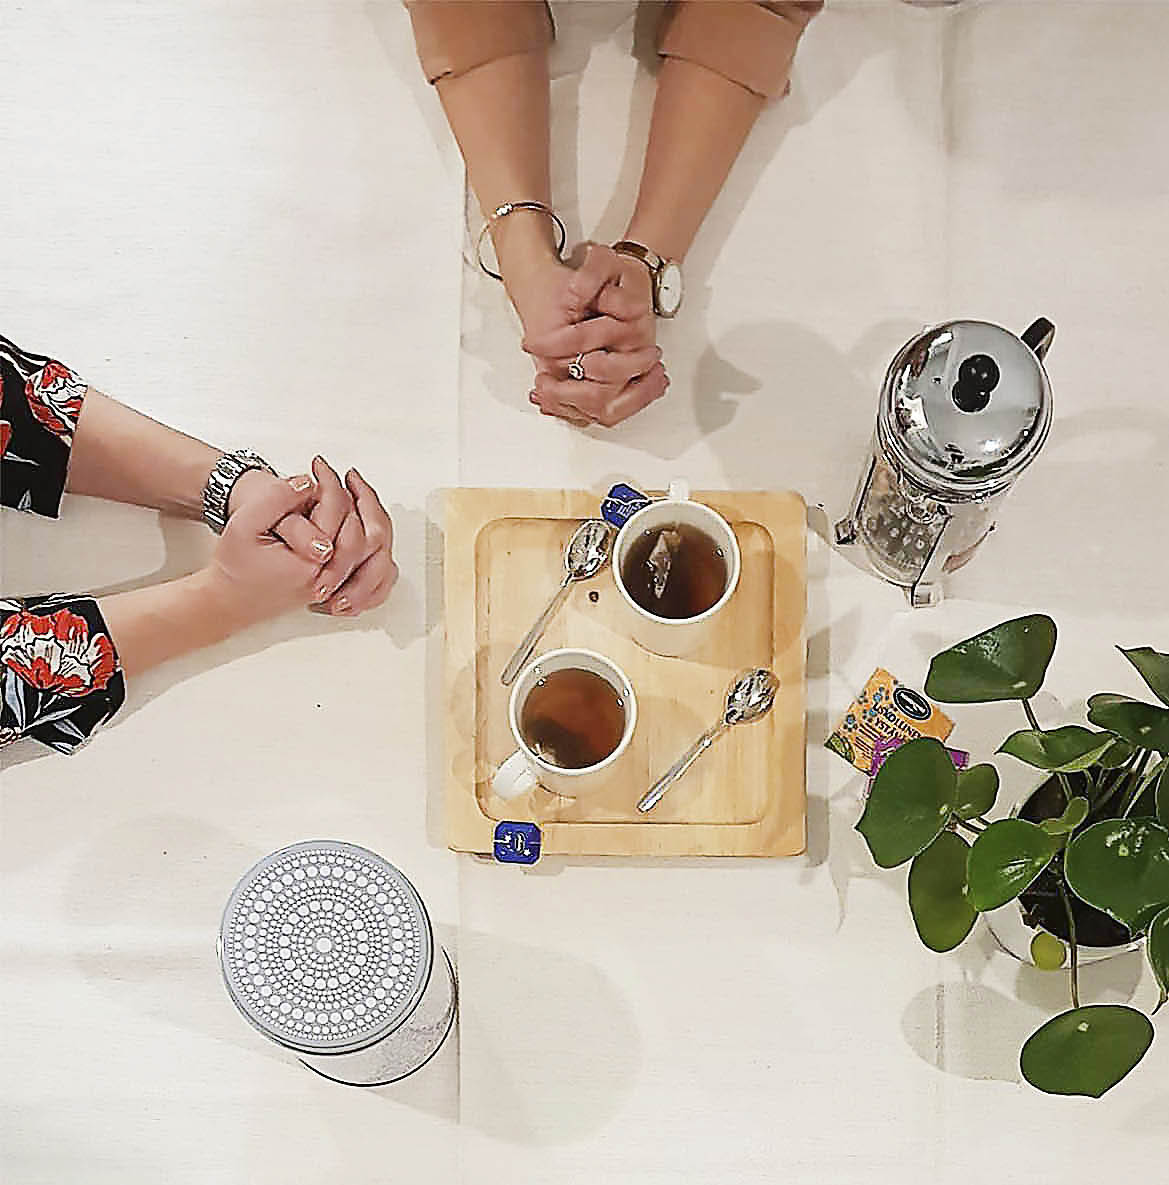 kahden naisen kädet ristissä pöydän päällä teekupit ja kannu sekä viherkasvi